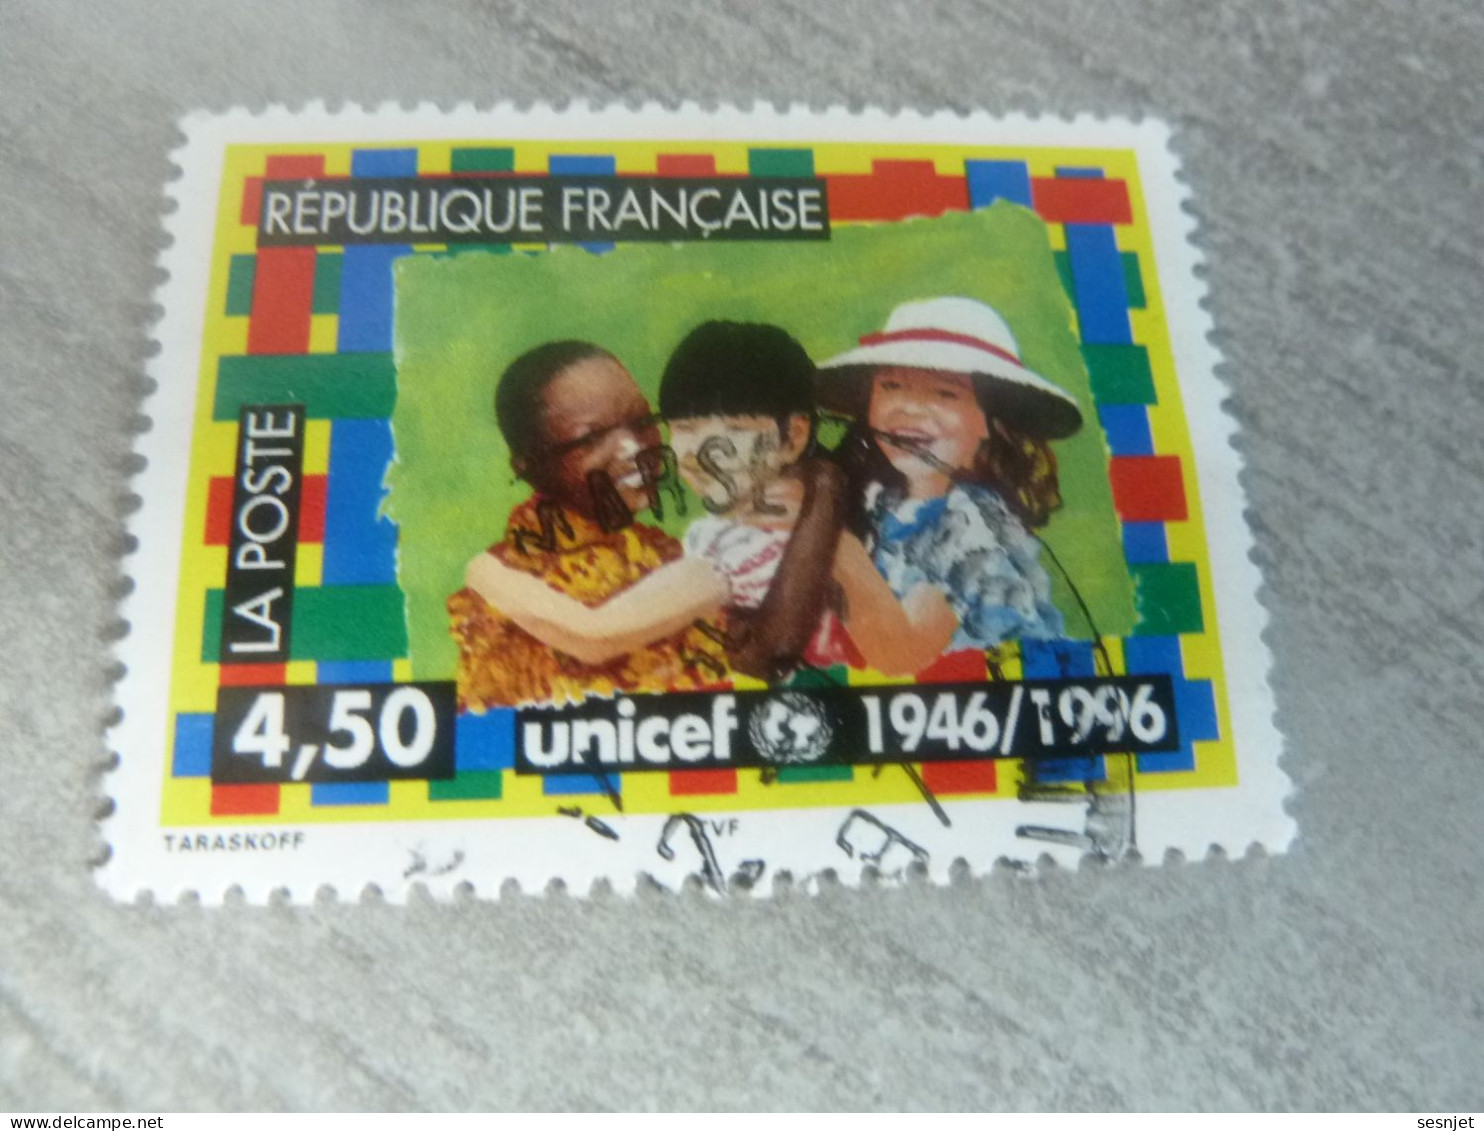 Cinquantenaire De L'Unicef - 4f.50 - Yt 3033 - Multicolore - Oblitéré - Année 1996 - - Used Stamps